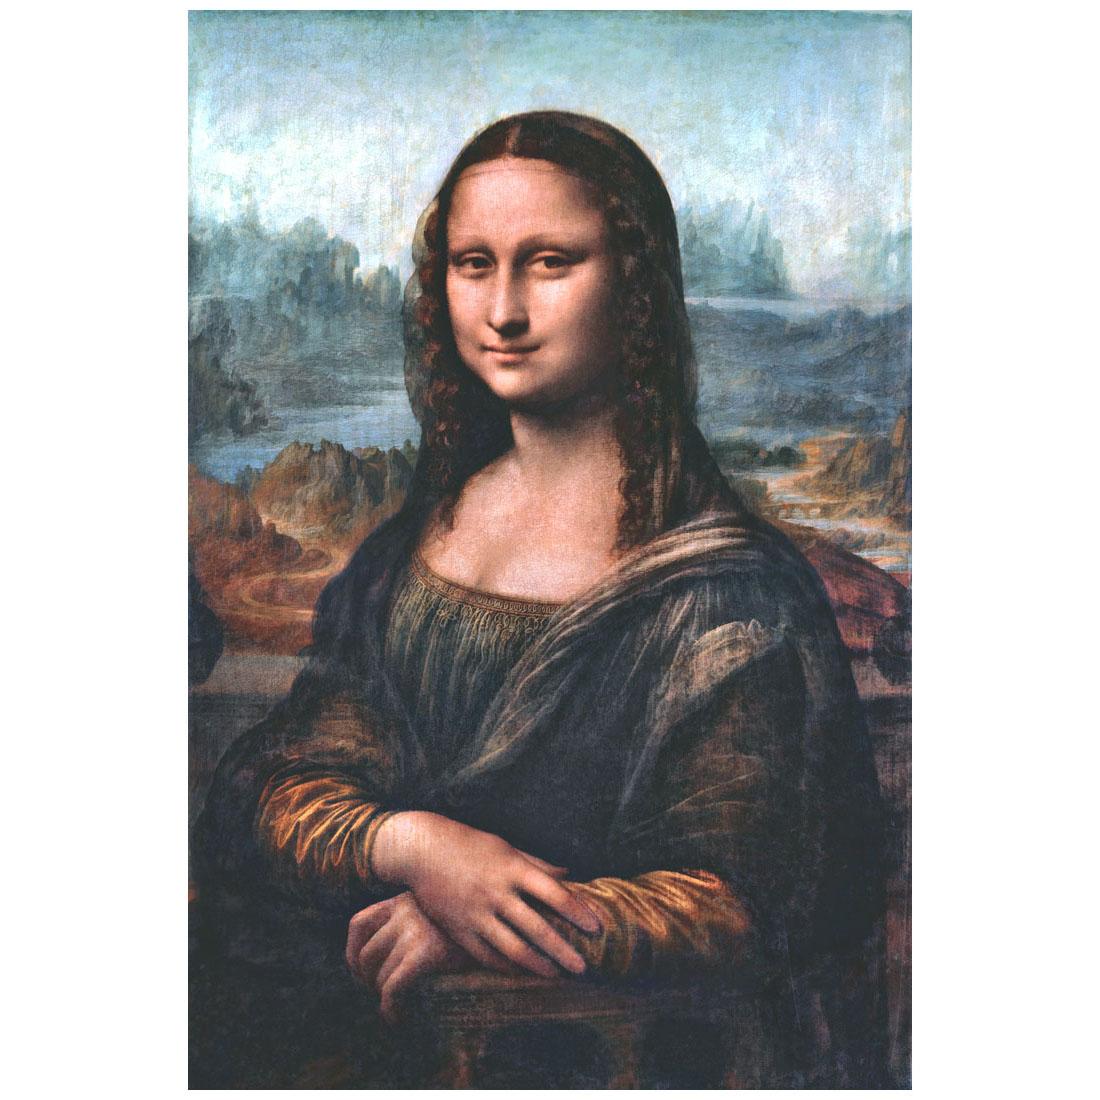 Leonardo da Vinci. Mona Lisa (La Gioconda). 1503-1518. Louvre Paris